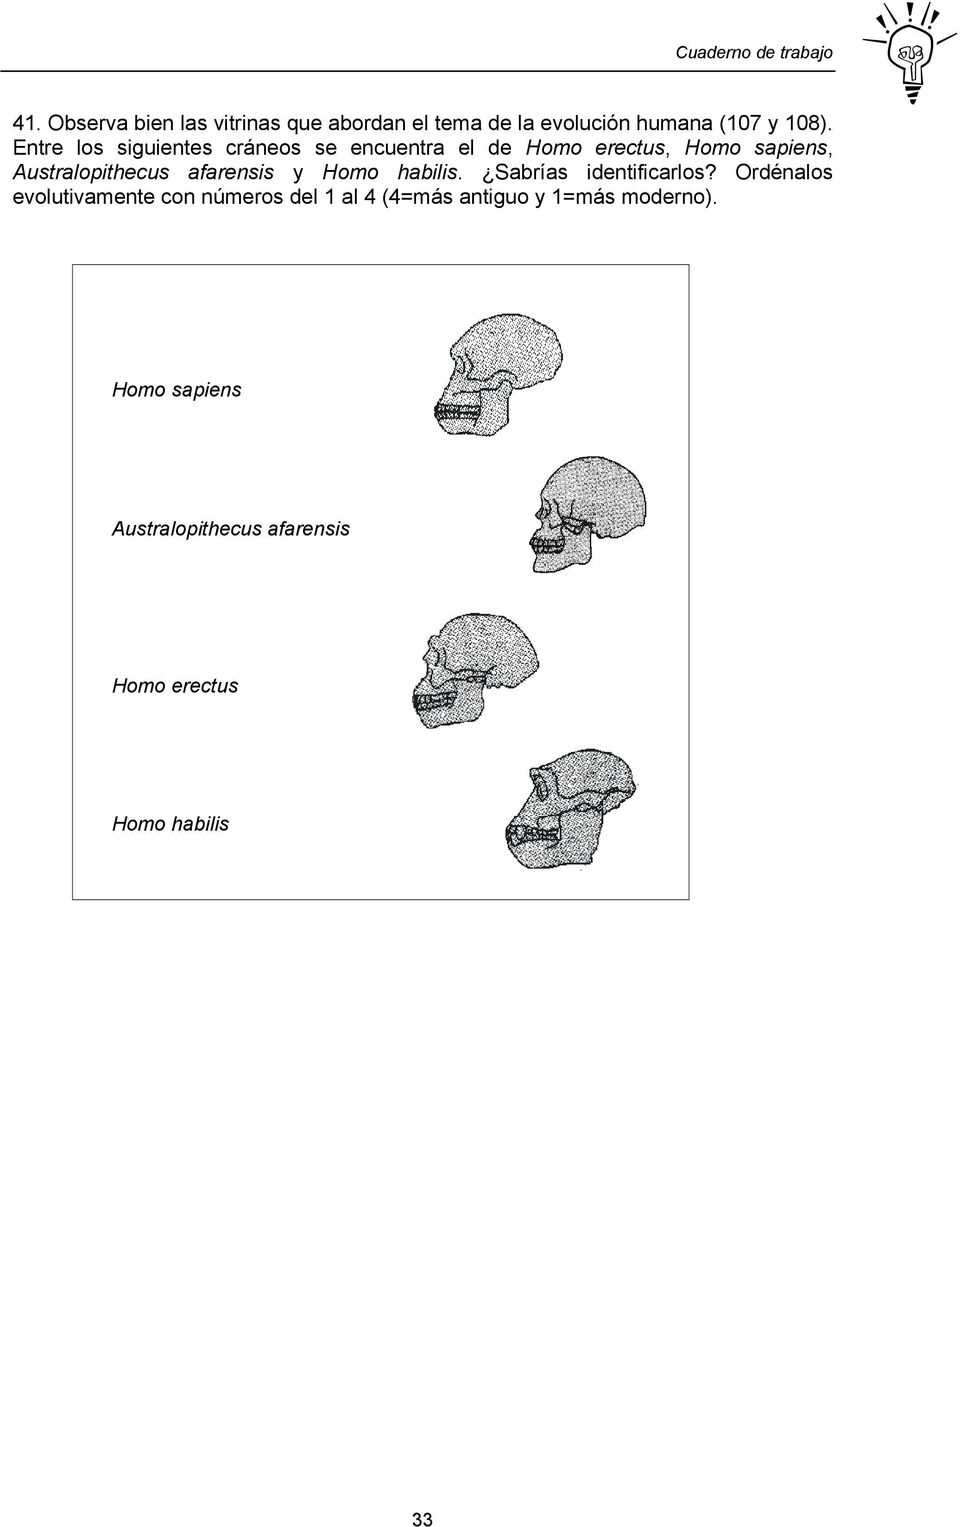 afarensis y Homo habilis. Sabrías identificarlos?